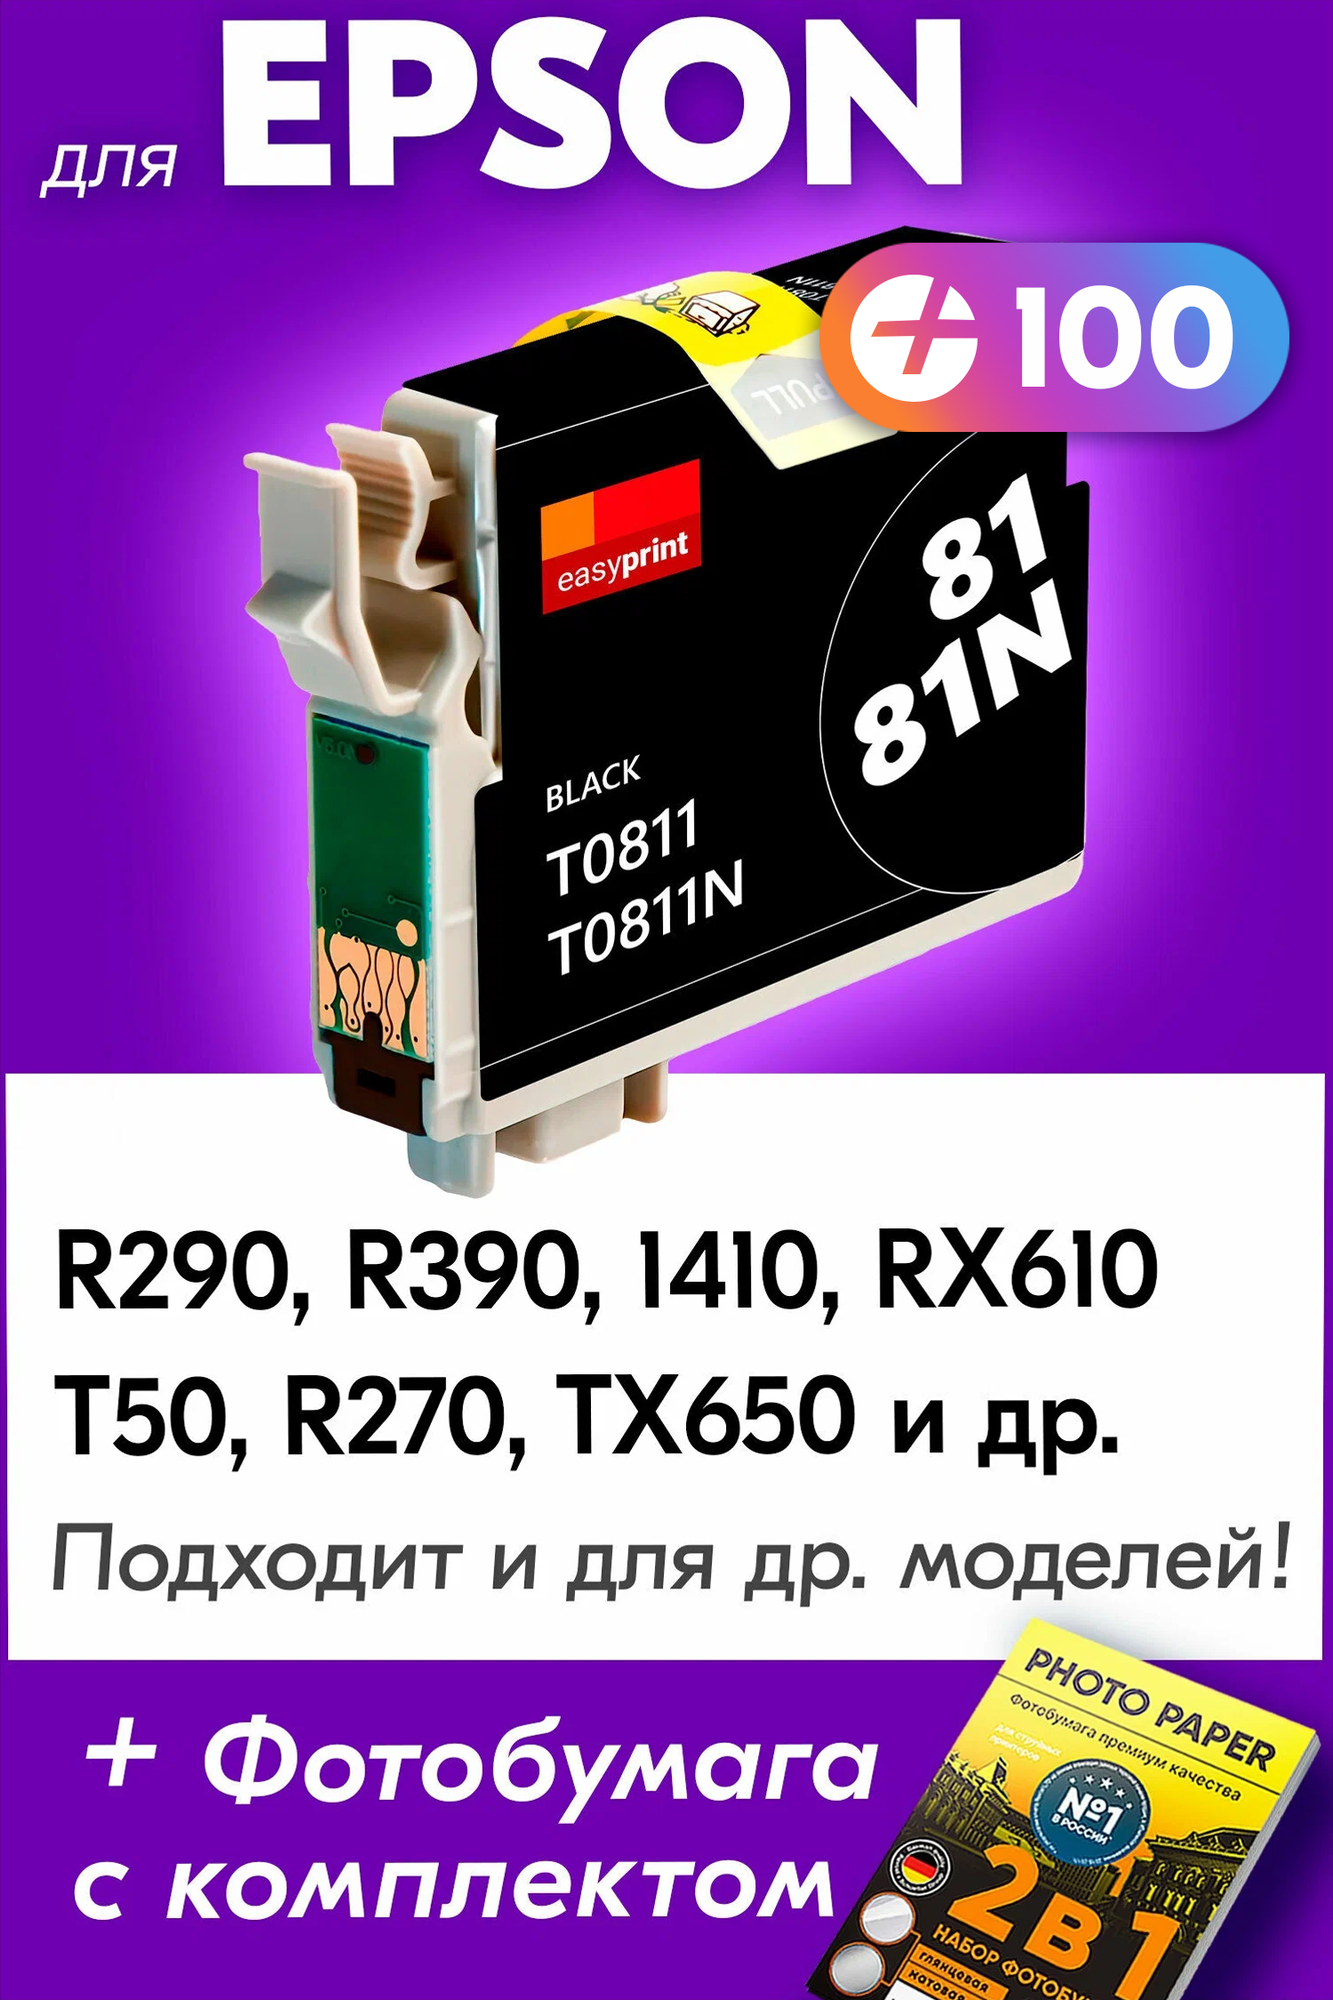 Картридж для Epson T0811, Epson Stylus Photo R290, R390, 1410, RX610, T50, R270, TX650 с чернилами (с краской) для струйного принтера, Черный (Black)